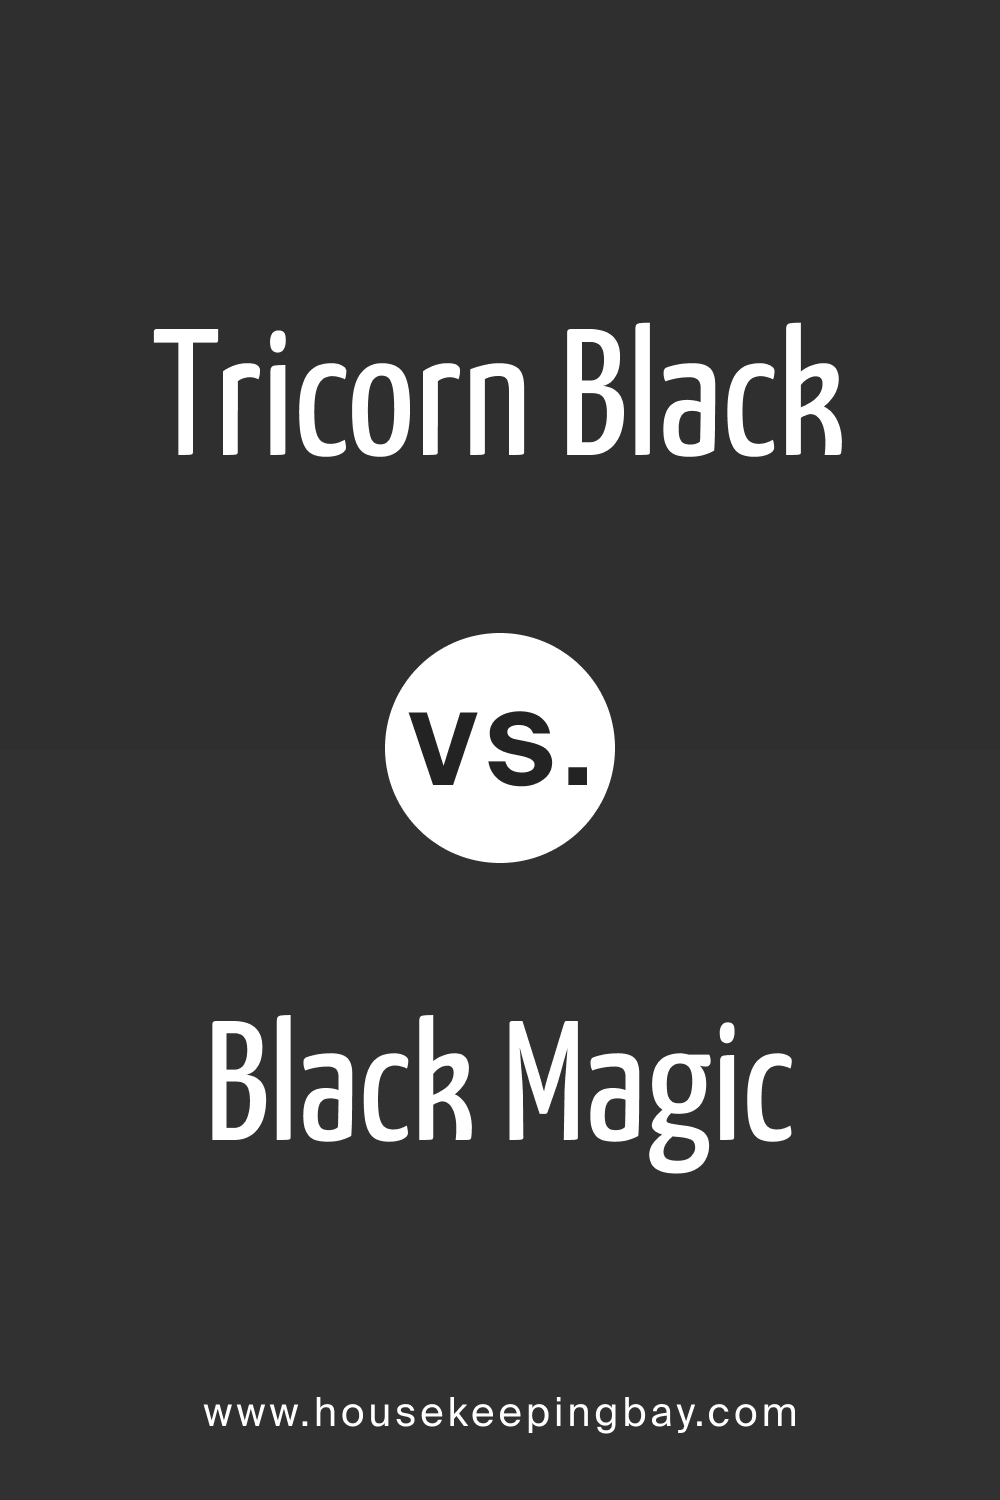 Tricorn Black vs. Black Magic